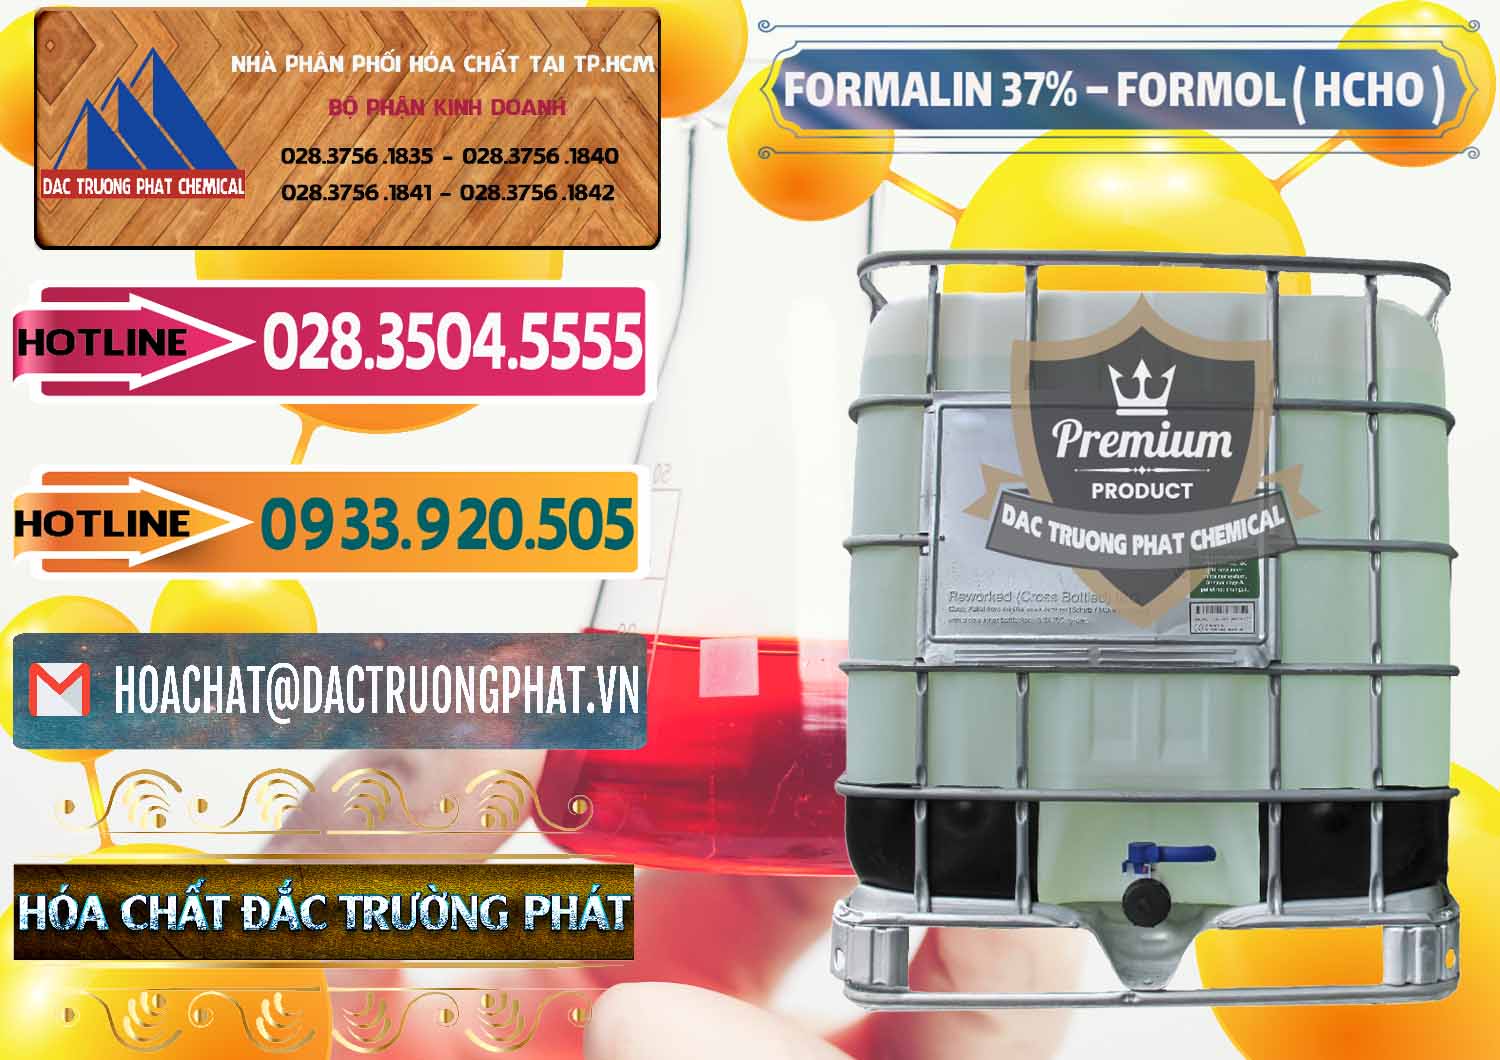 Cty chuyên phân phối & bán Formalin - Formol ( HCHO ) 37% Việt Nam - 0187 - Cung cấp _ kinh doanh hóa chất tại TP.HCM - dactruongphat.vn